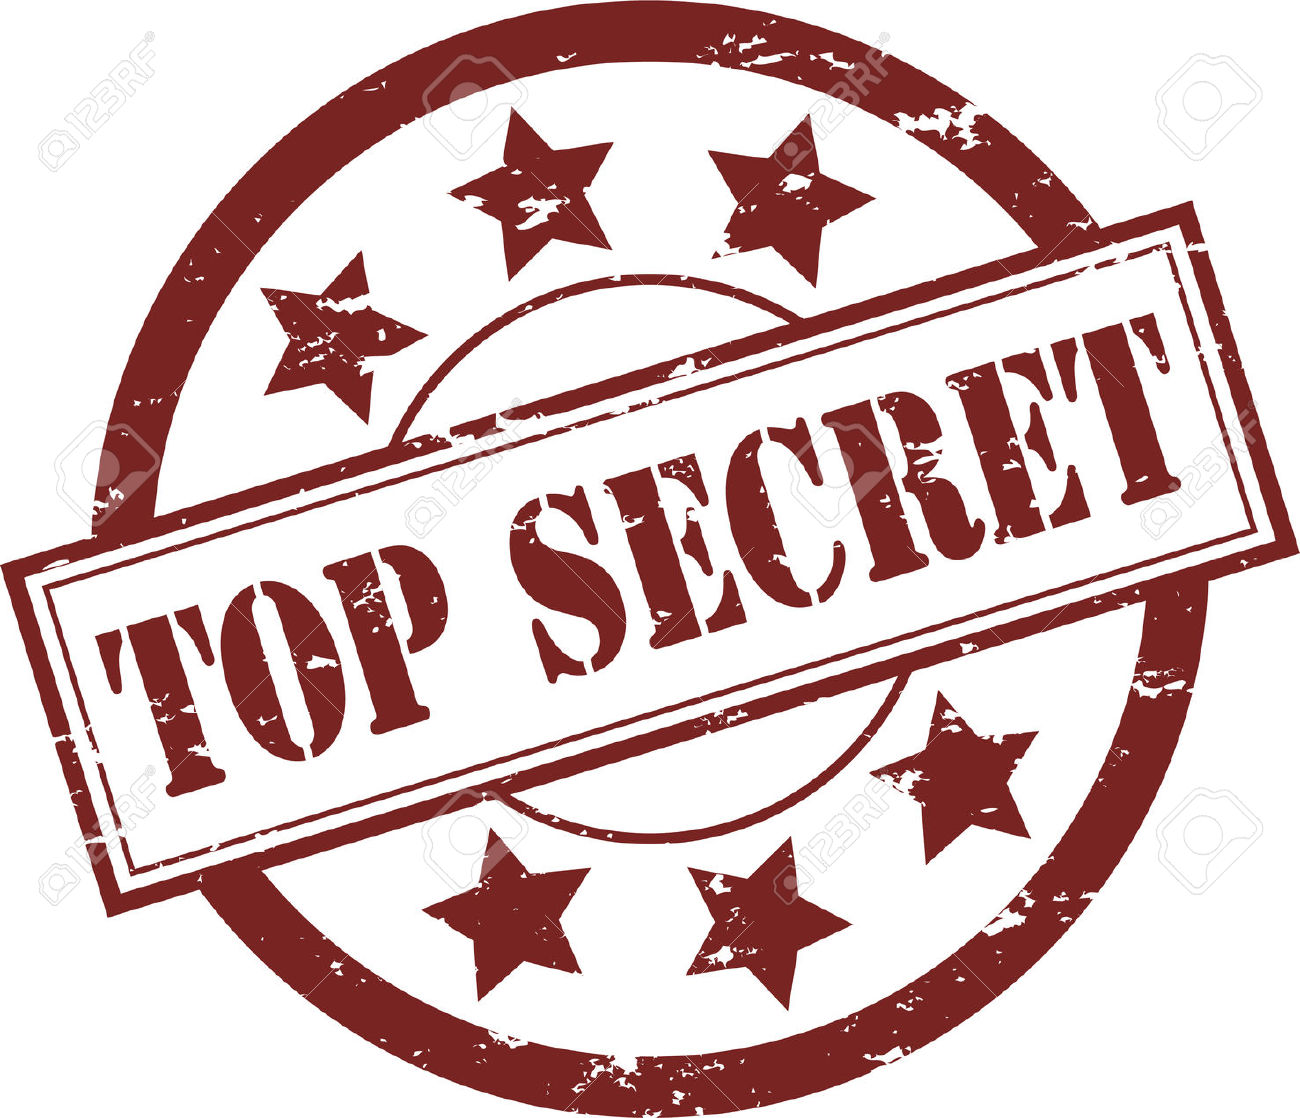 INSTANT download: Spy Kit SPy ID cards Top Secret Labels